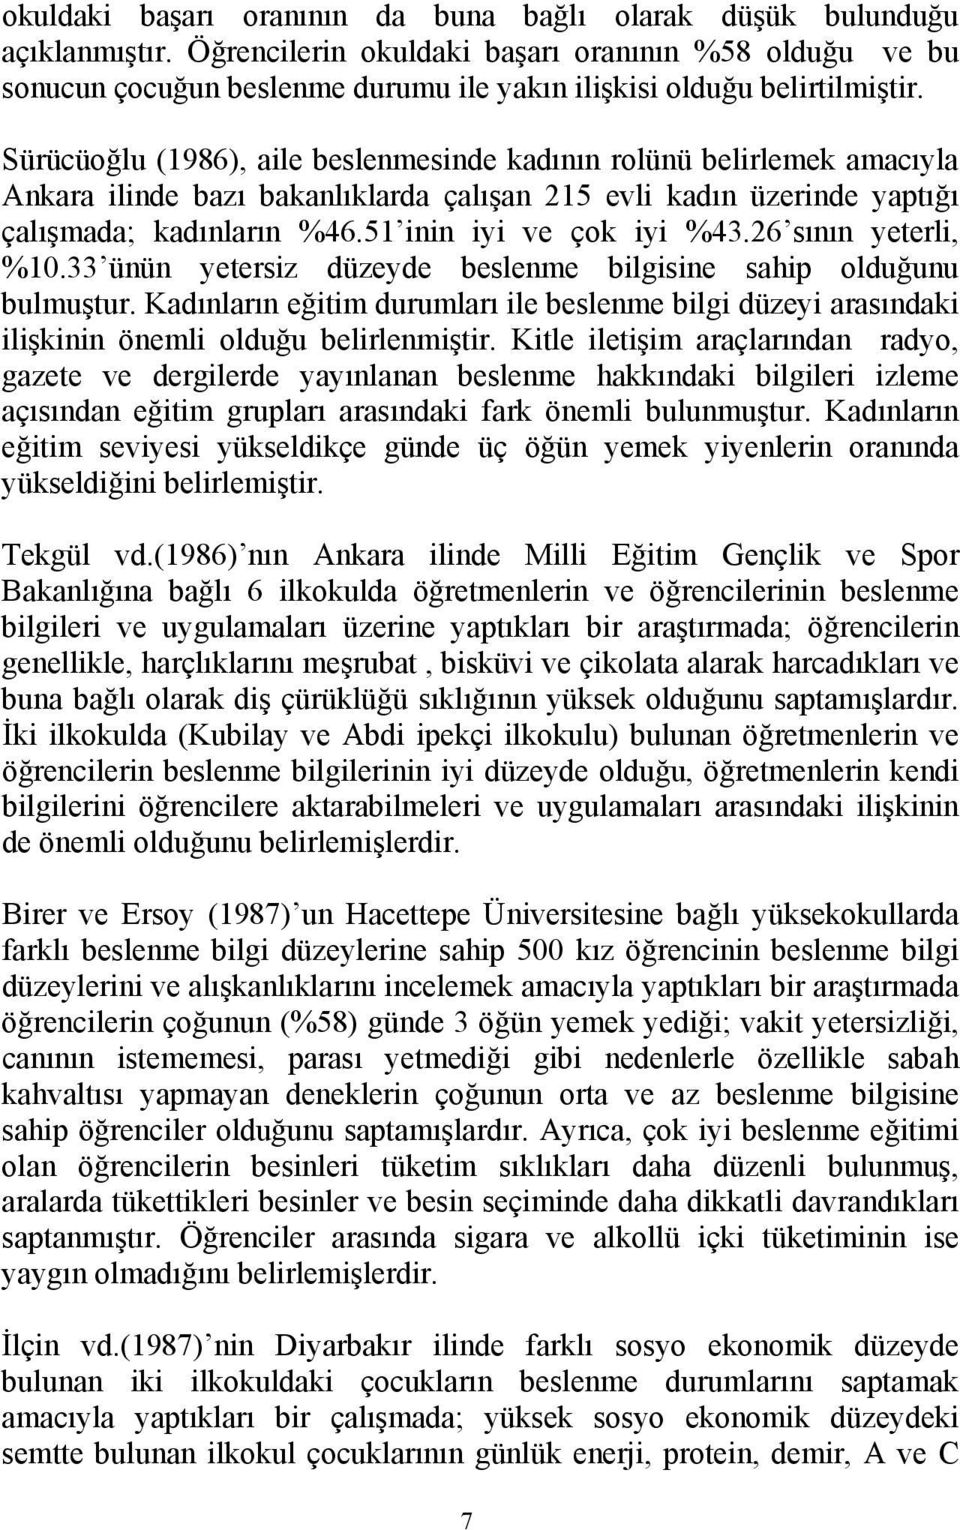 Sürücüoğlu (1986), aile beslenmesinde kadının rolünü belirlemek amacıyla Ankara ilinde bazı bakanlıklarda çalışan 215 evli kadın üzerinde yaptığı çalışmada; kadınların %46.51 inin iyi ve çok iyi %43.